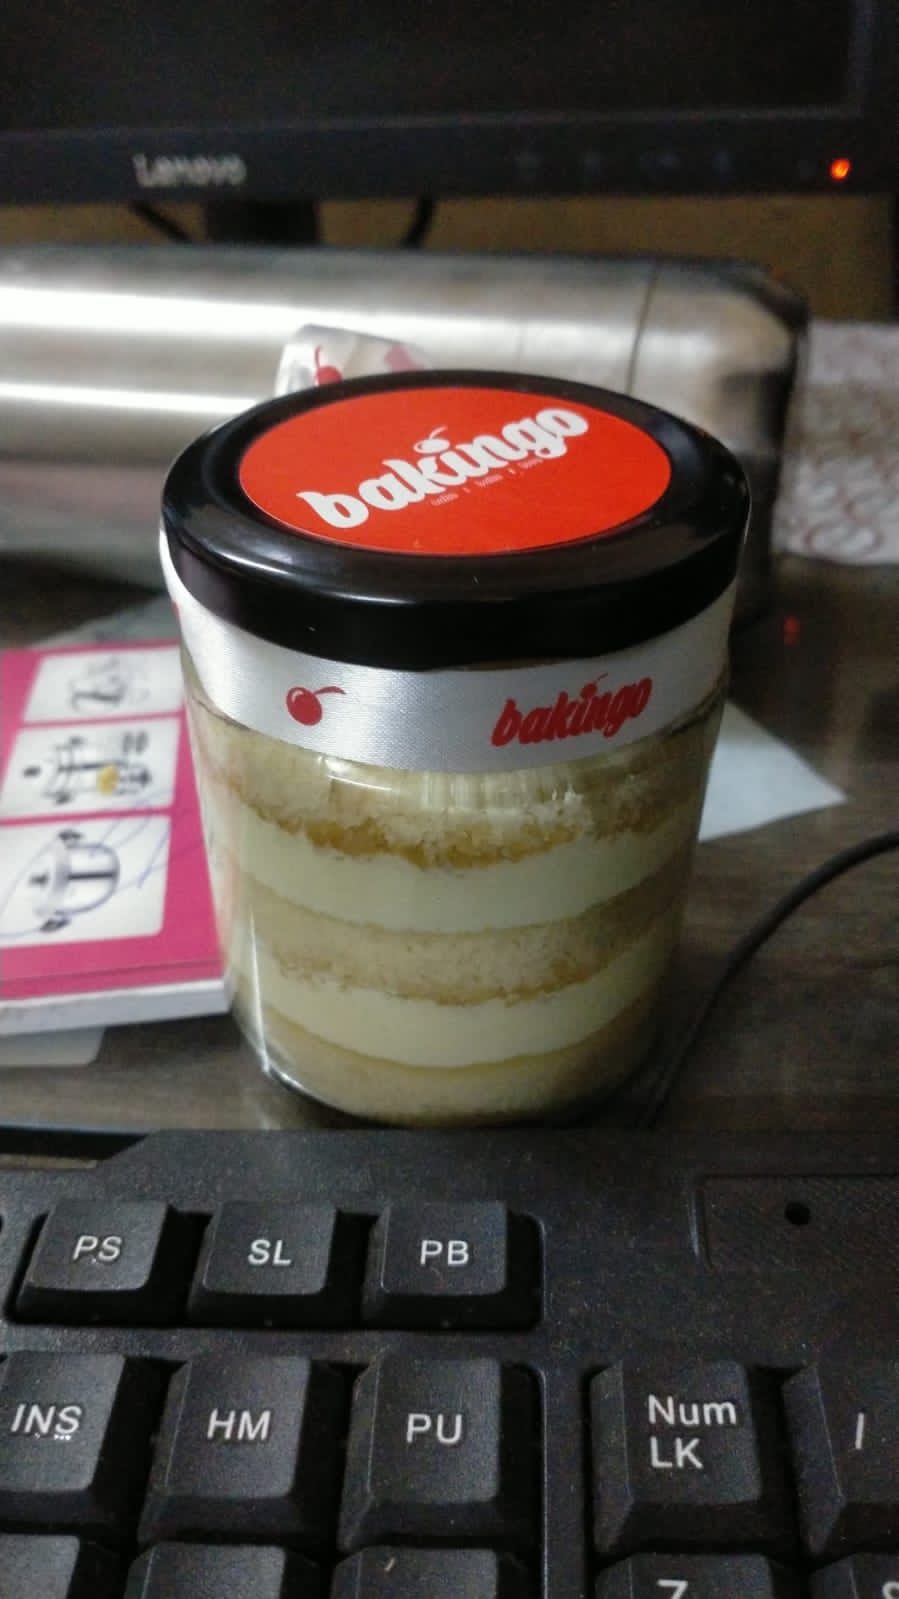 Yum Butterscotch in Jar